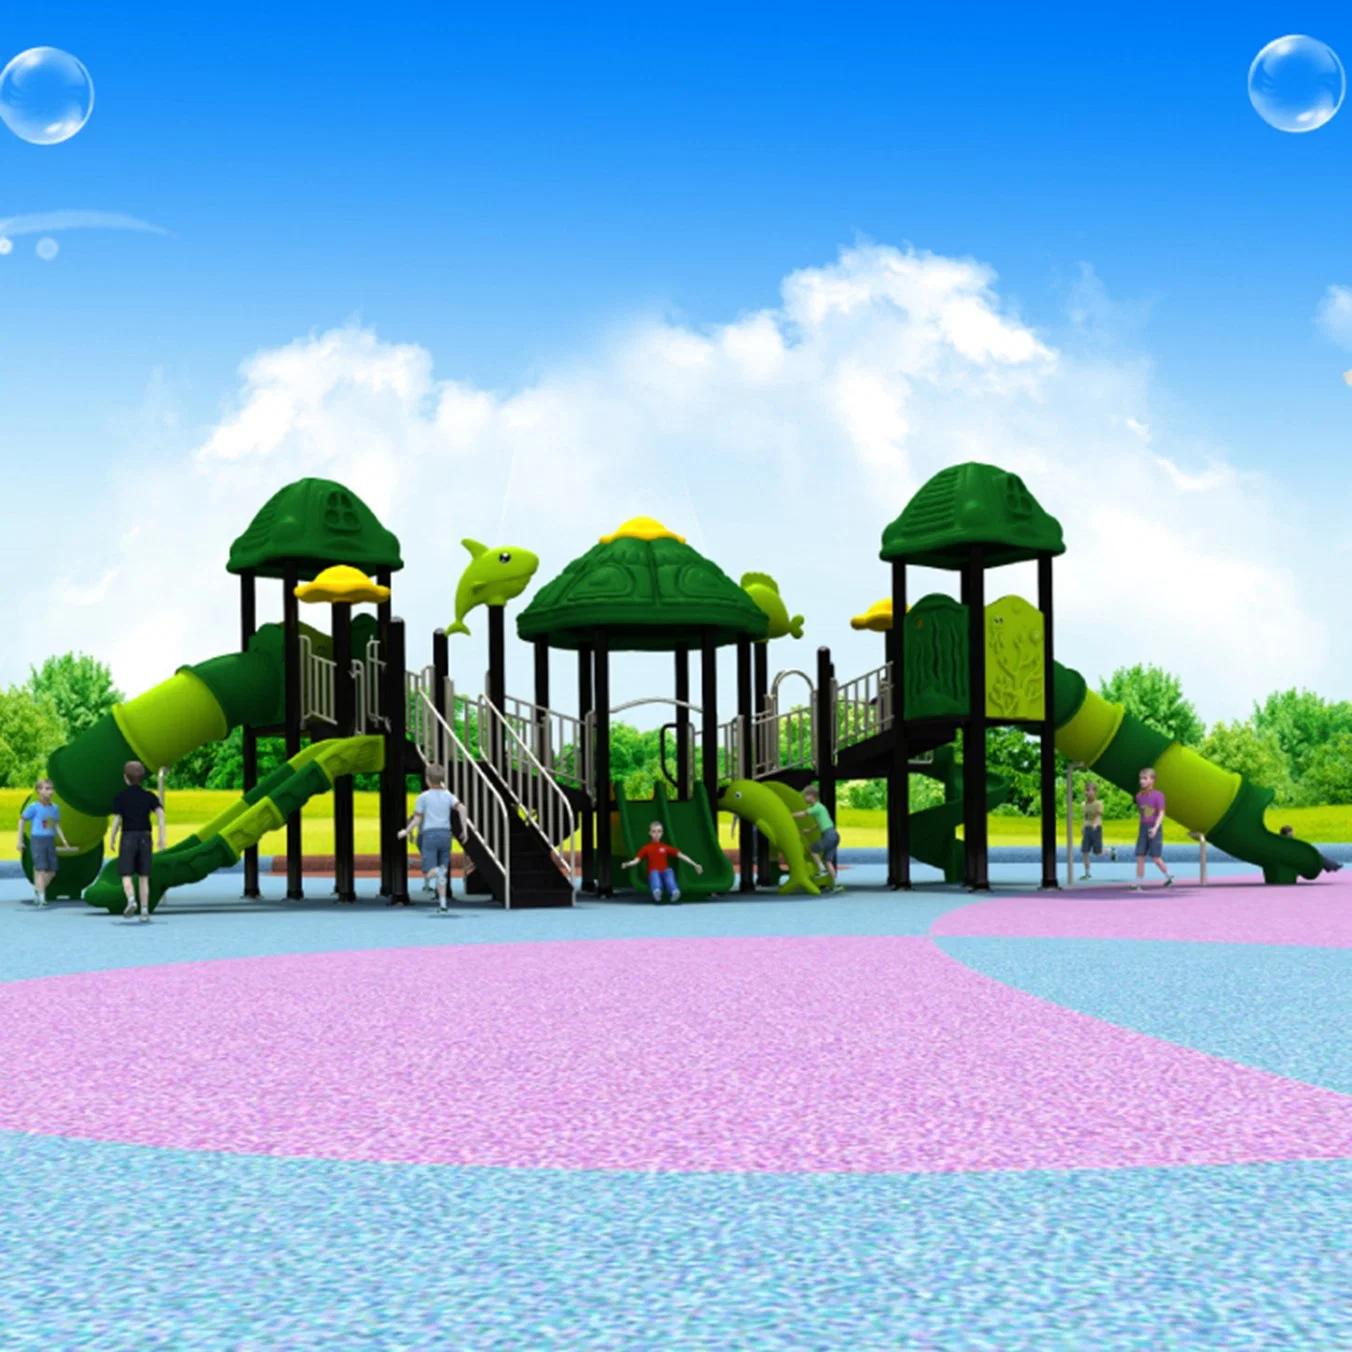 Fun Outdoor Playground Slides Kids School Amusement Park Equipment 486b